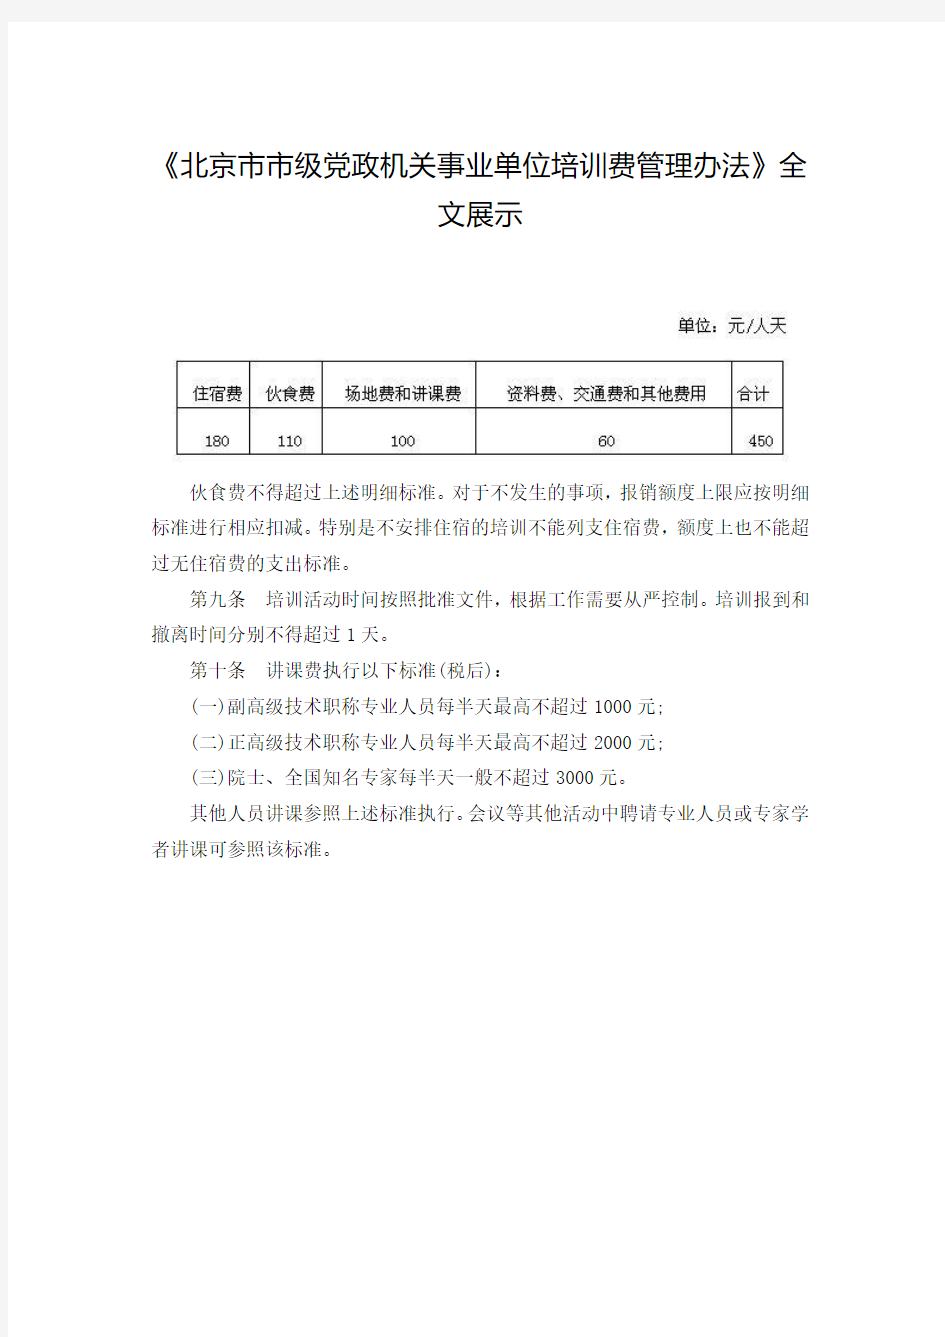 北京市市级党政机关事业单位培训费管理办法